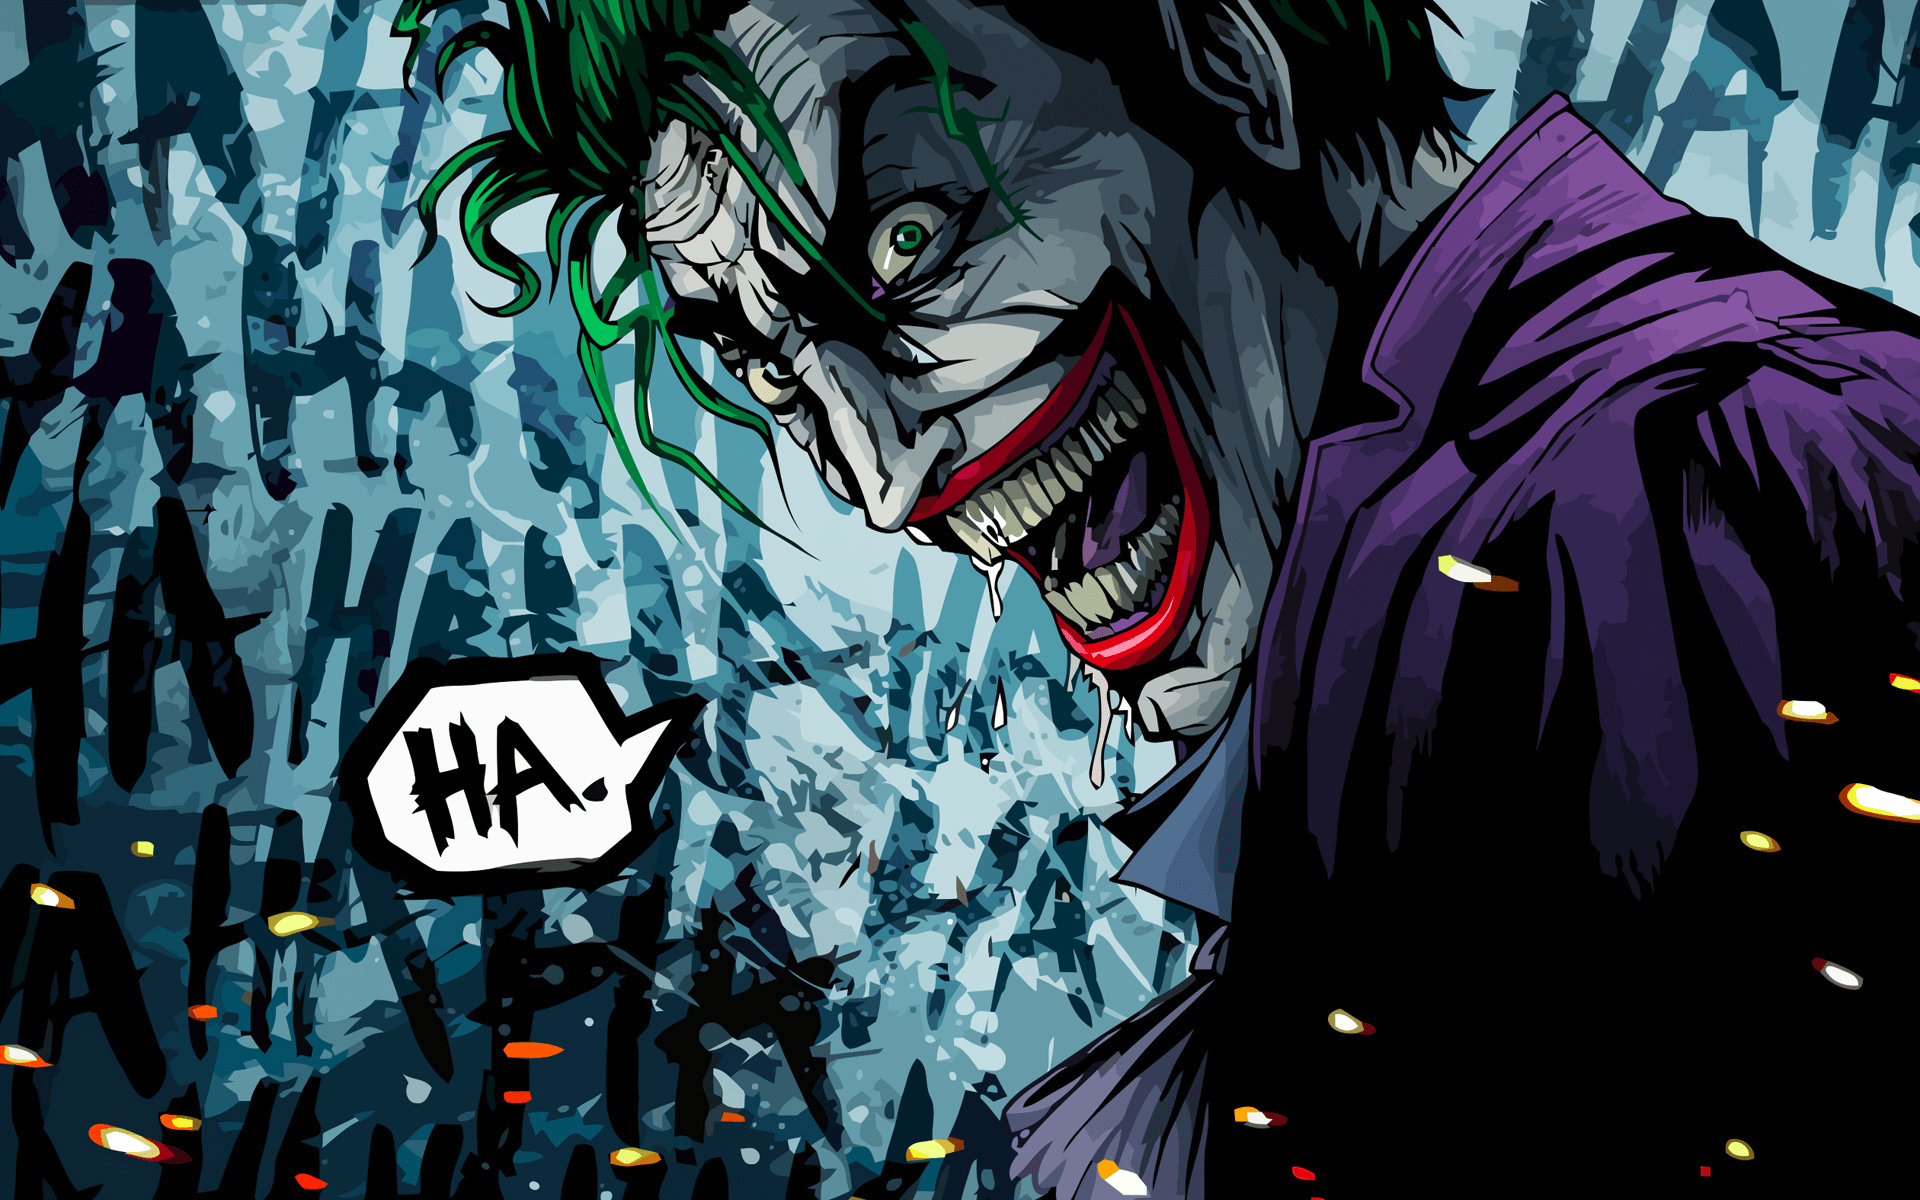 The Joker Comic Wallpaper Free The Joker Comic Background